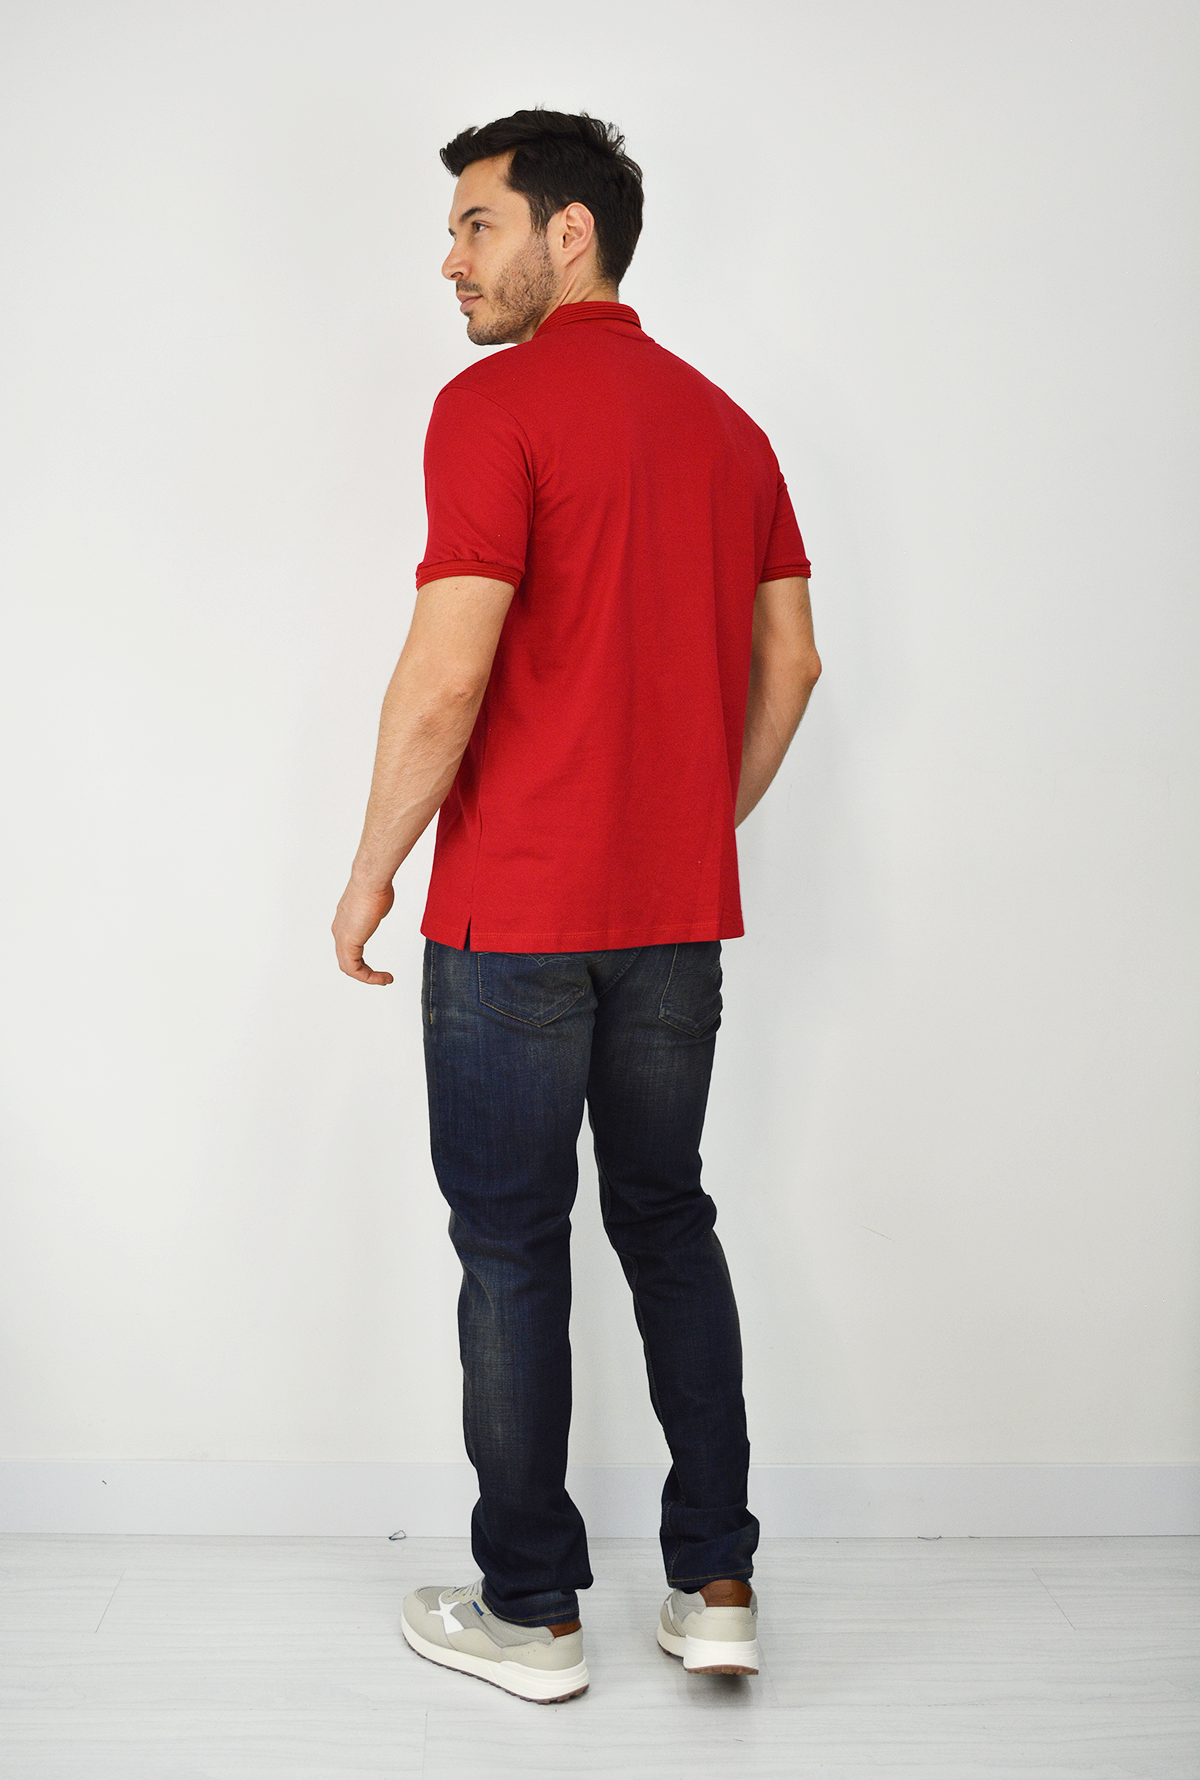 Camiseta Tipo Polo Para Hombre Roja CPB07